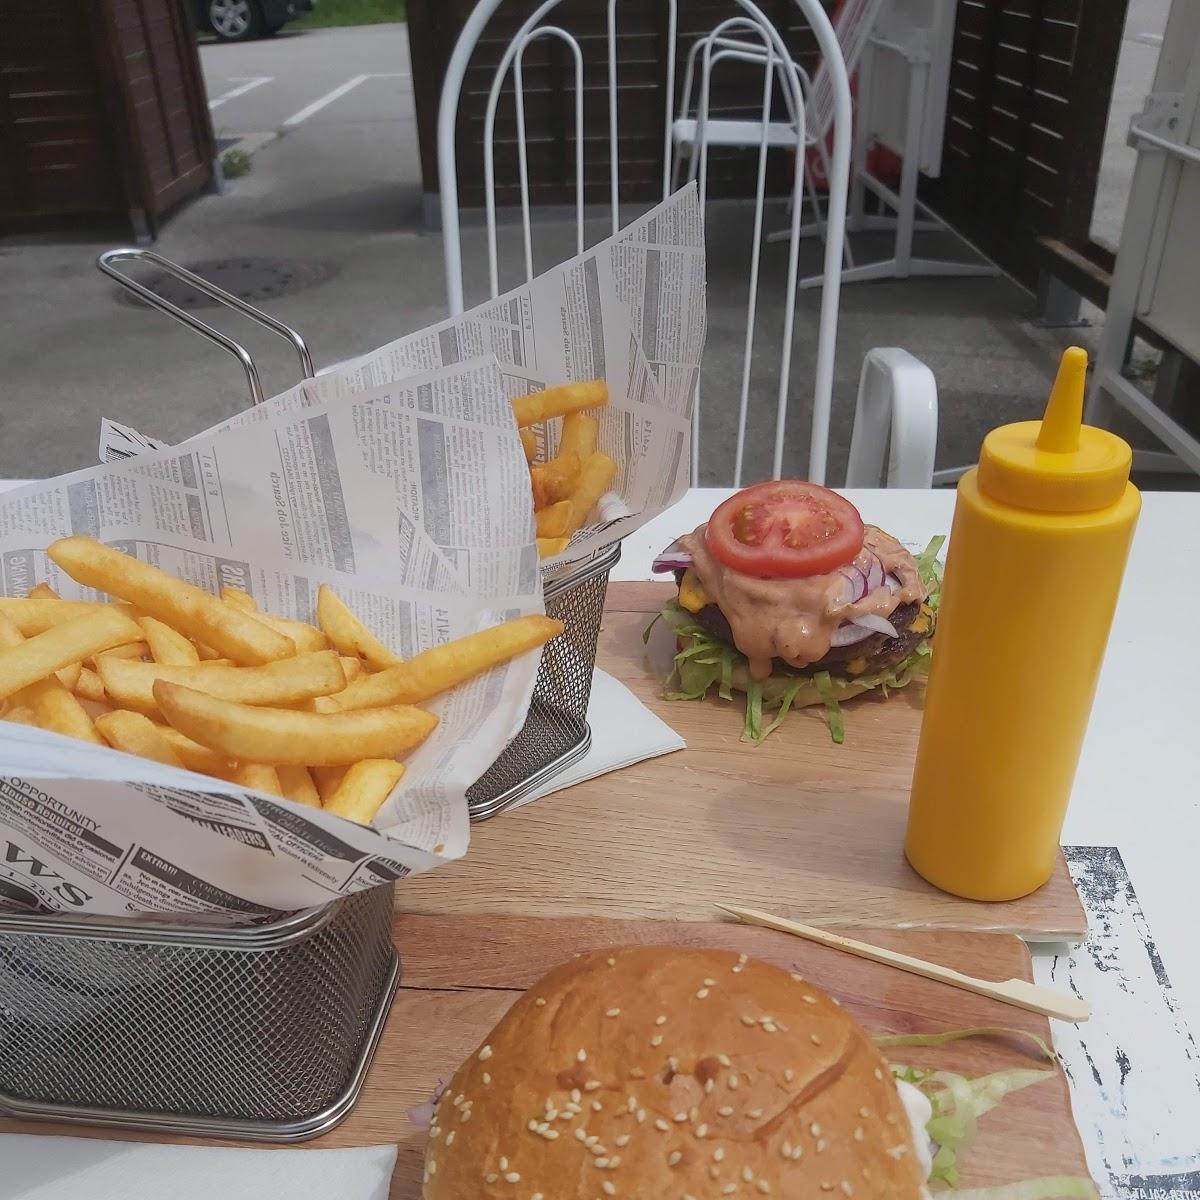 Restaurant "Crazy Burger" in Oberweis